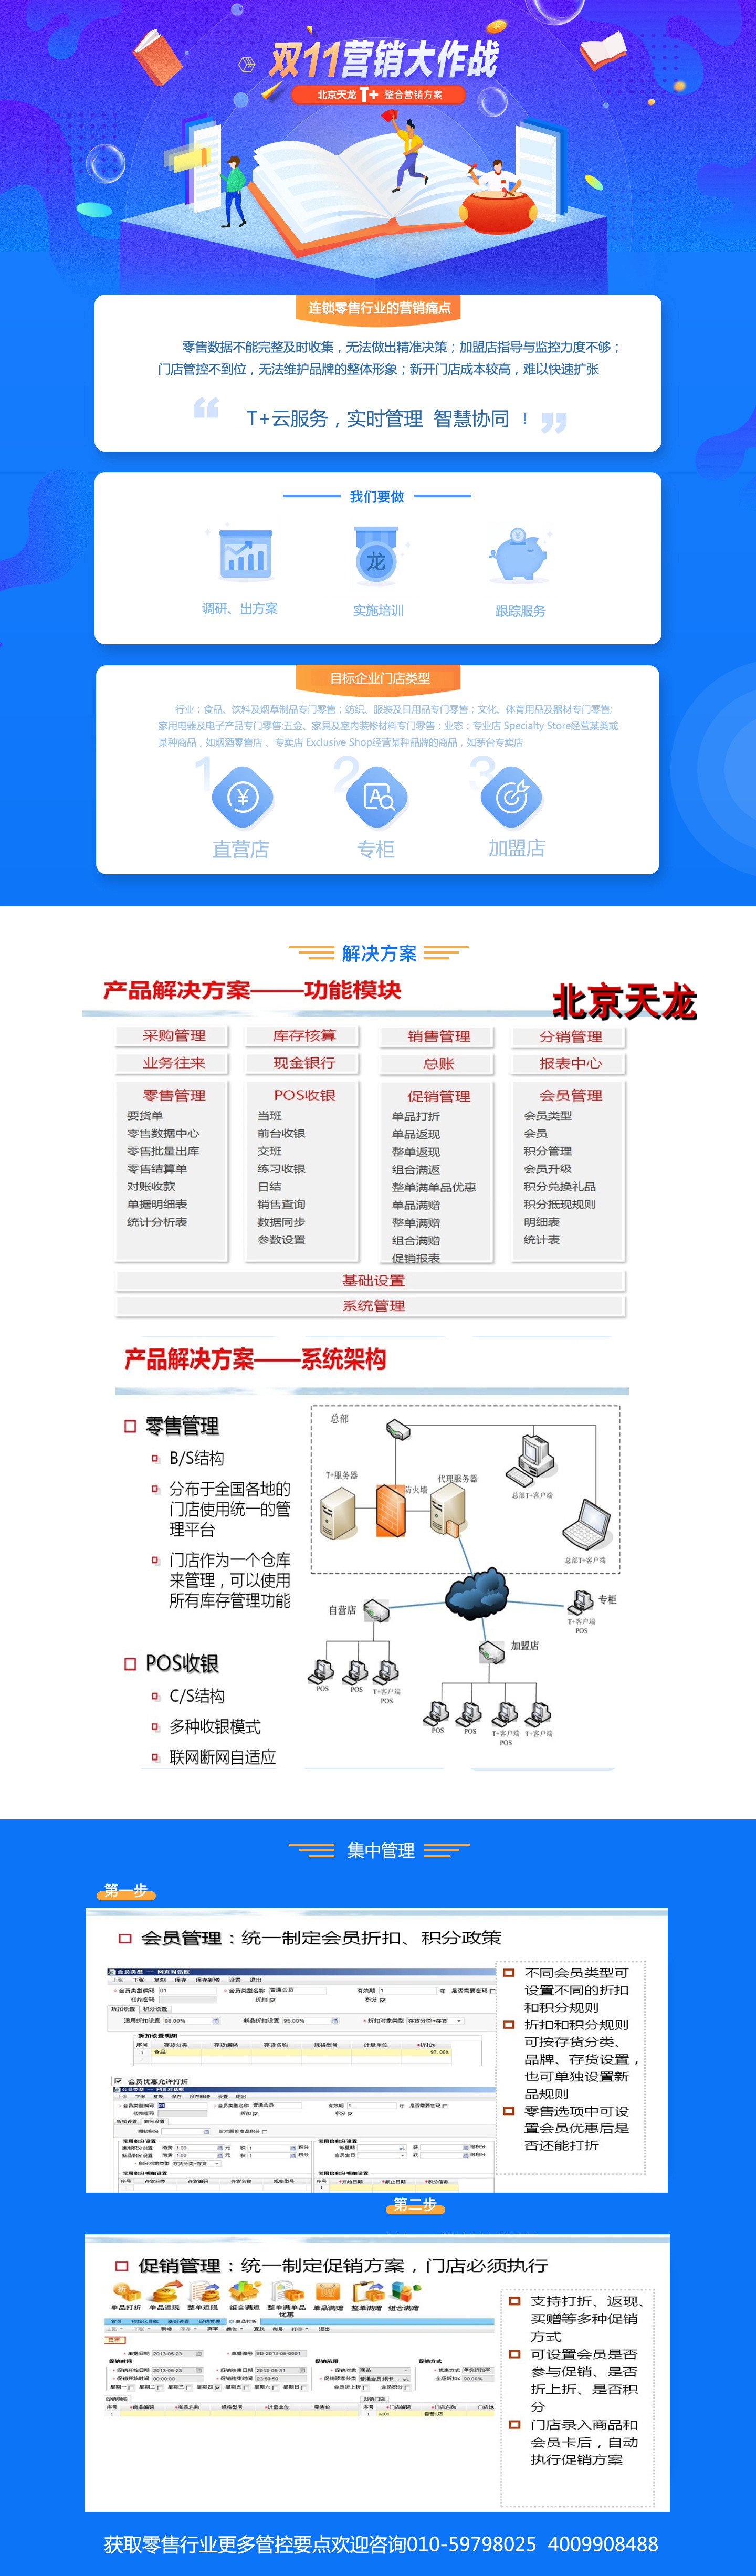 双11营销大作战-北京天龙T+零售行业整合营销方案